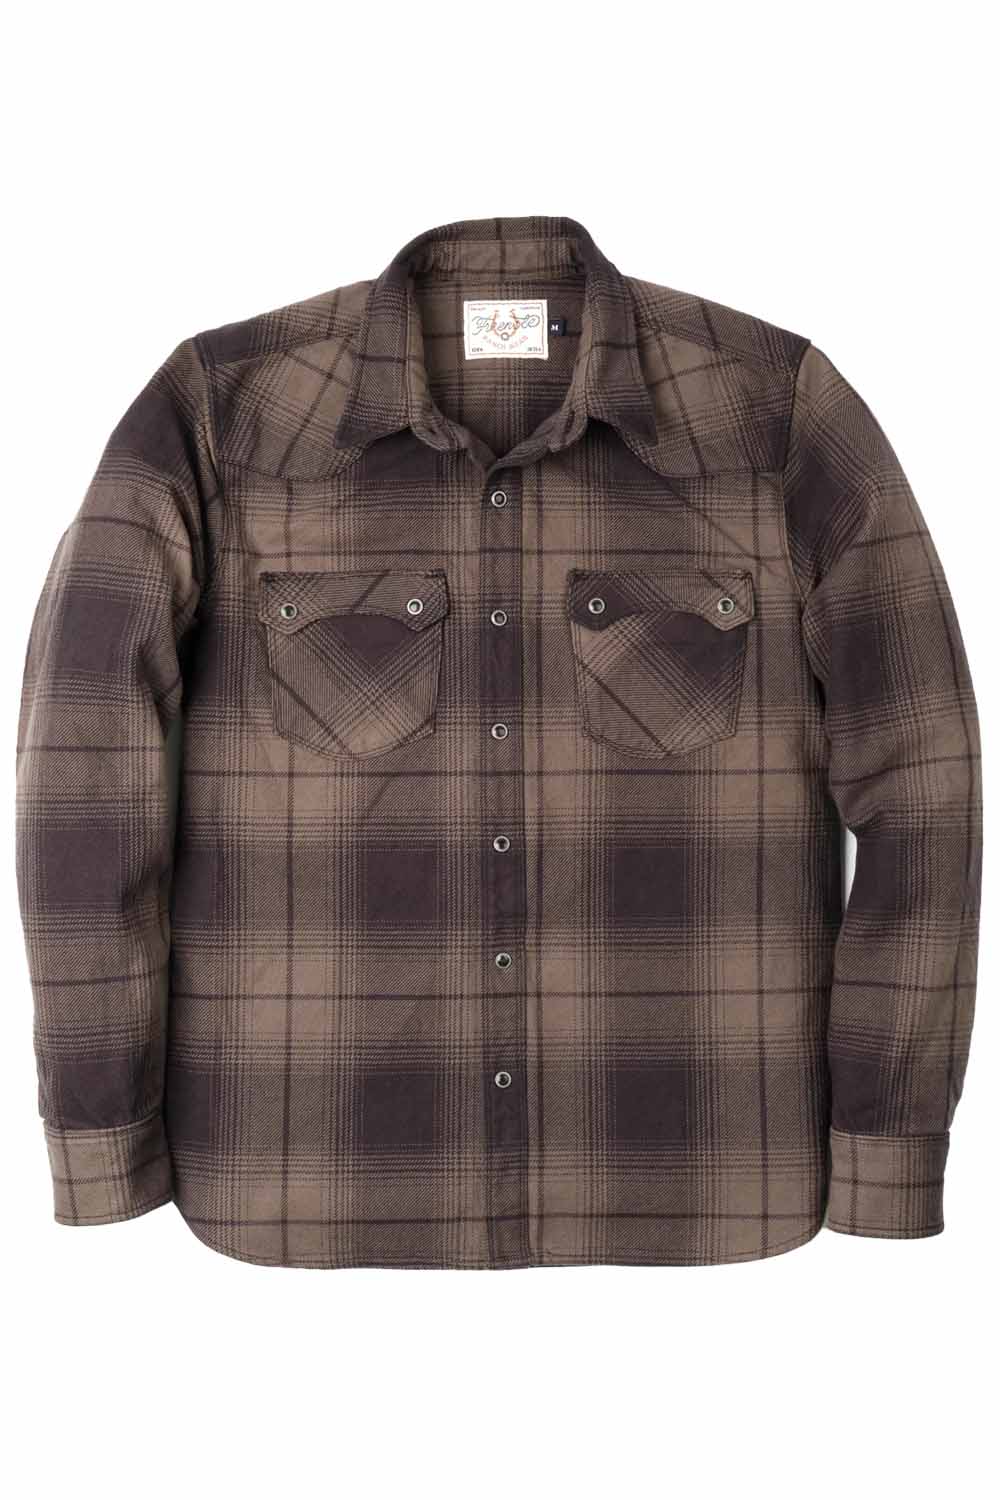 Freenote - Modern Western Shirt - Cedar Shadow Plaid - Front